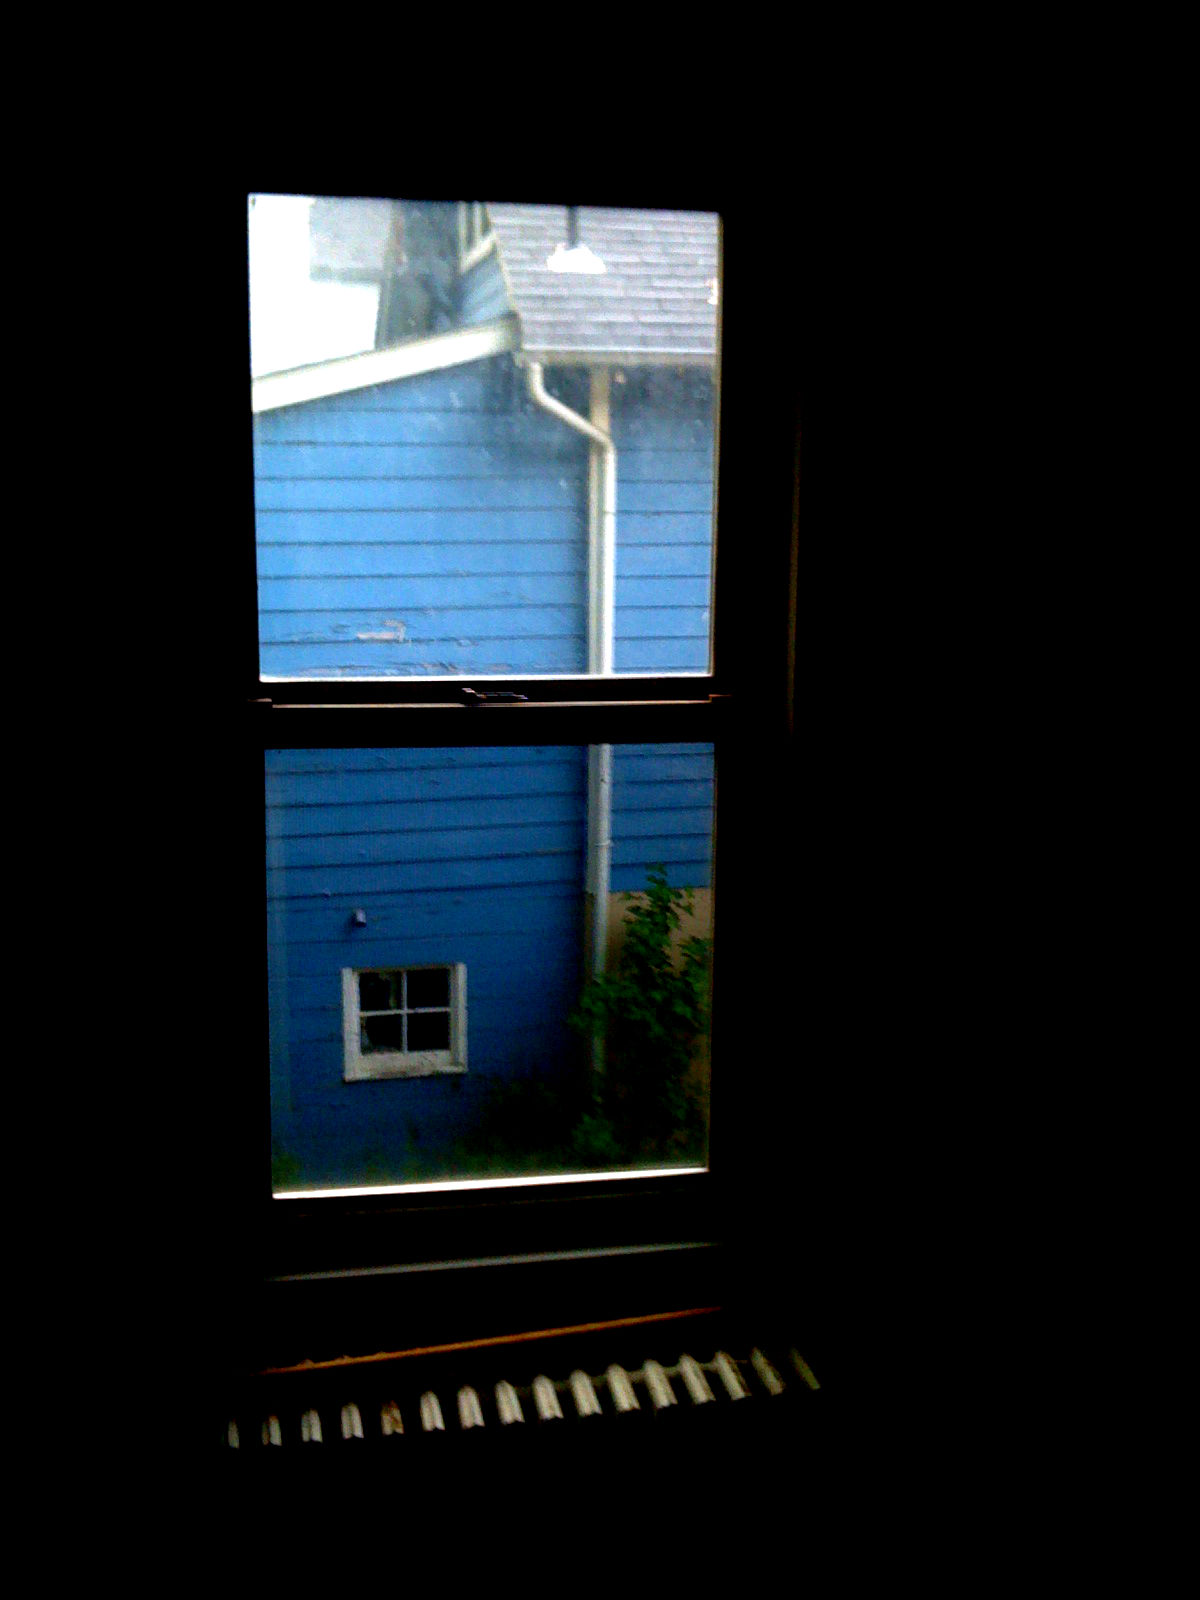 Scenes From My New House: Window, House Next Door